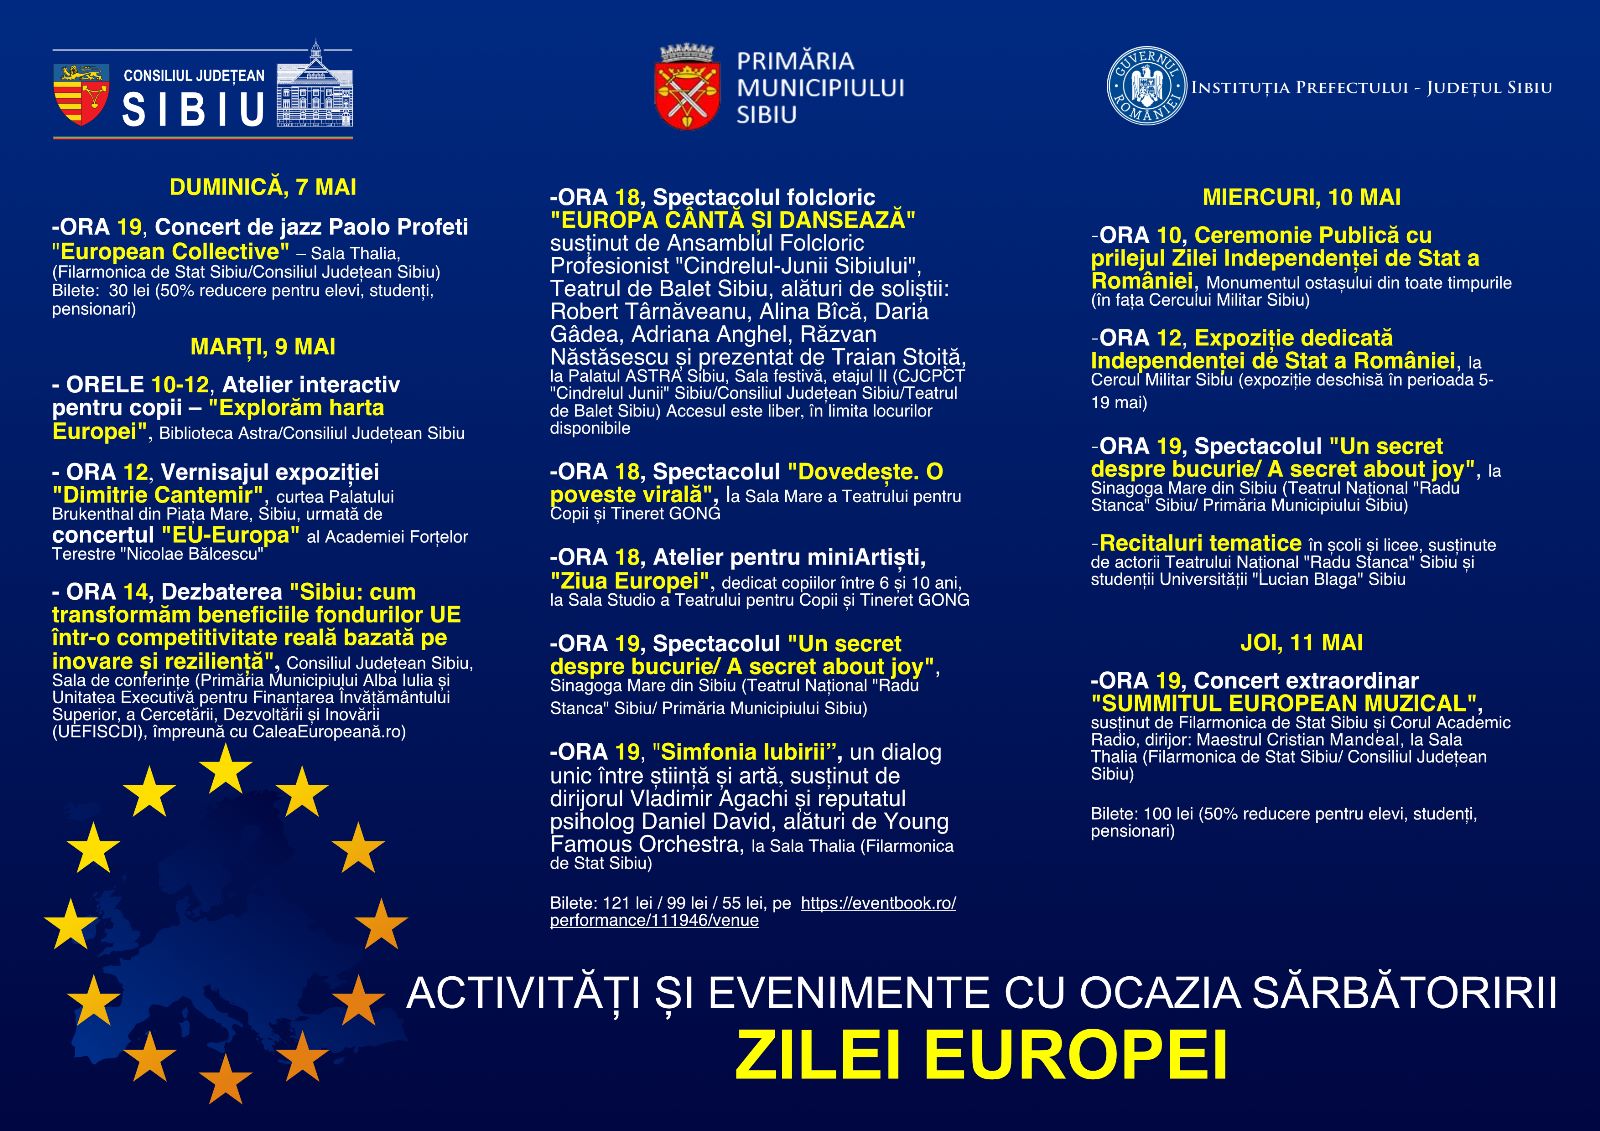 Ziua Europei și Ziua Independenței Naționale sărbătorite la Sibiu cu ateliere, concerte și spectacole. Programul complet al evenimentelor